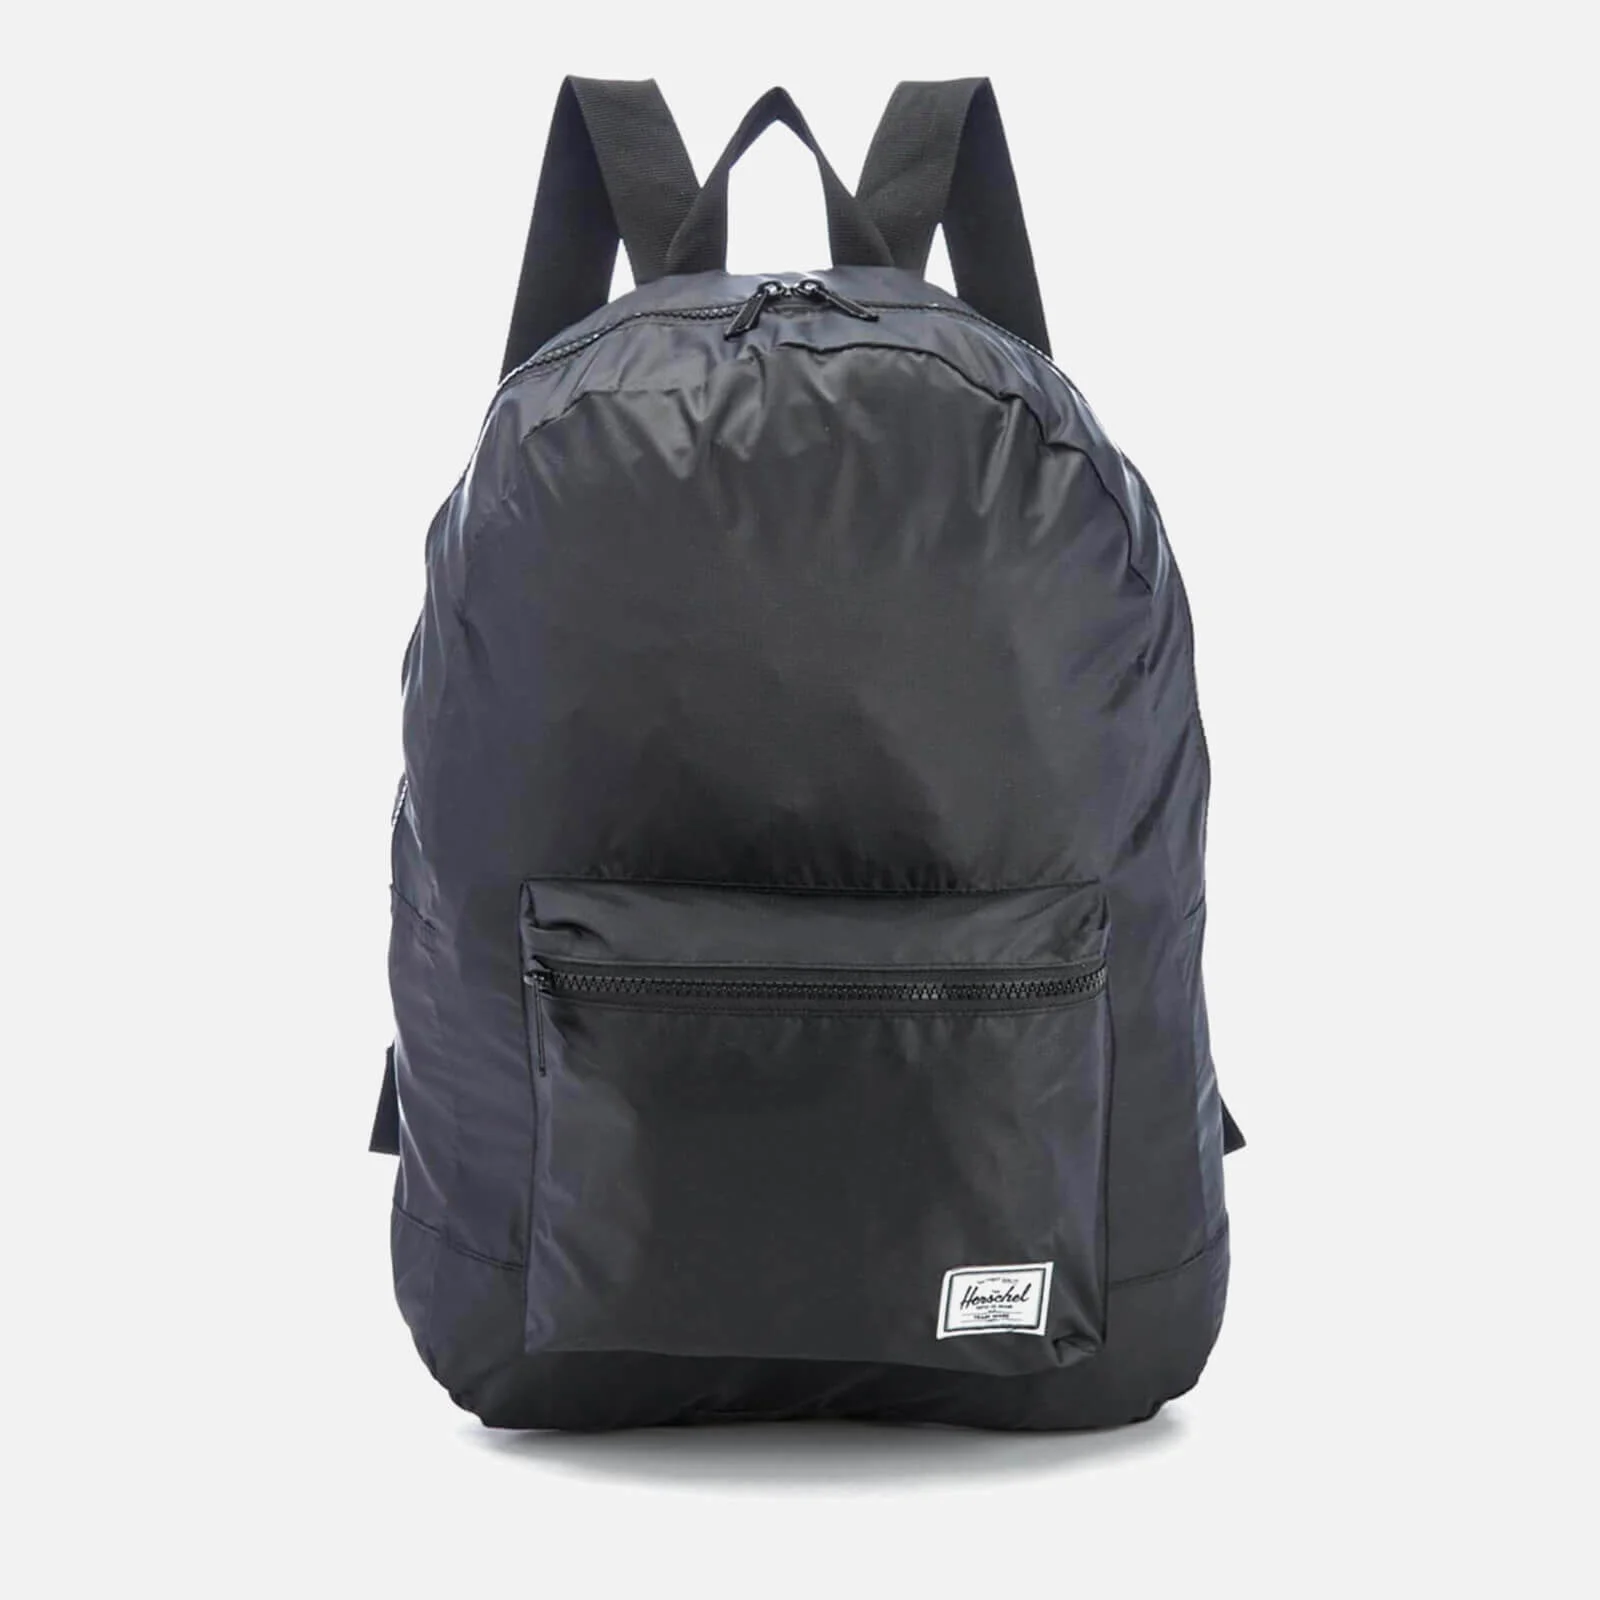 Herschel Supply Co. Packable Daypack Backpack - Black Image 1